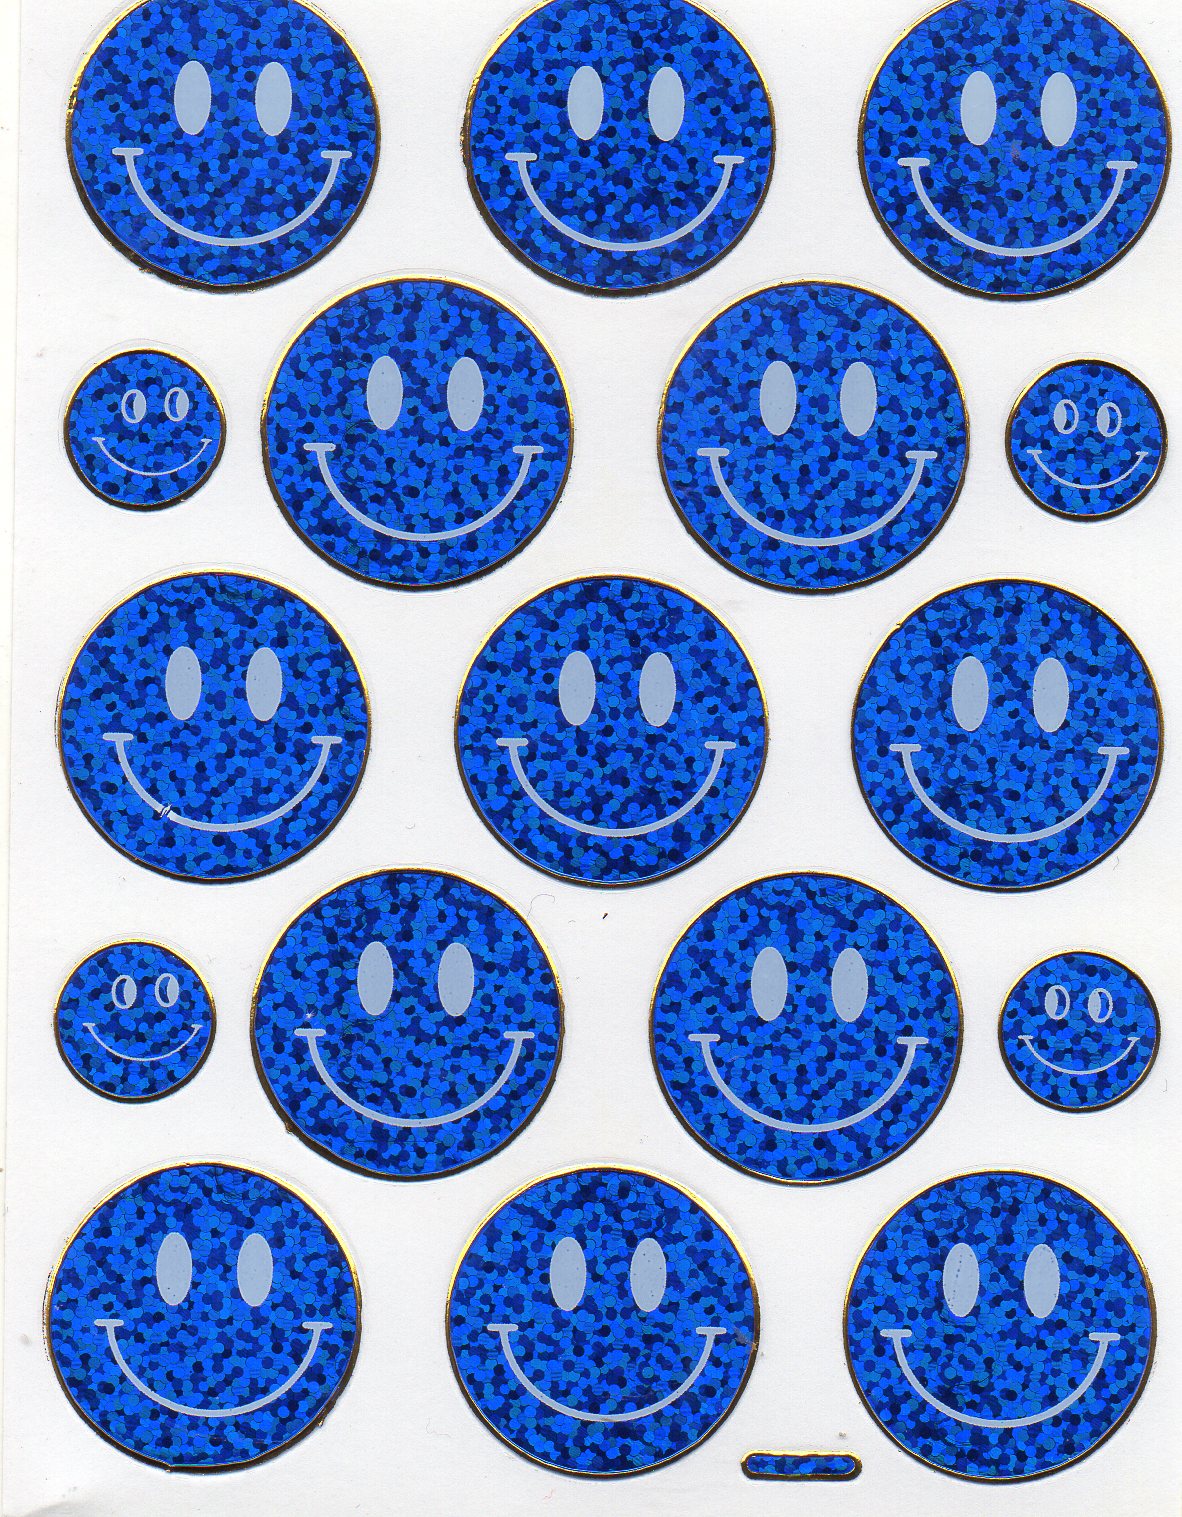 Smilies laughing face smiley blue sticker metallic glitter effect for children handicraft kindergarten 1 sheet 064